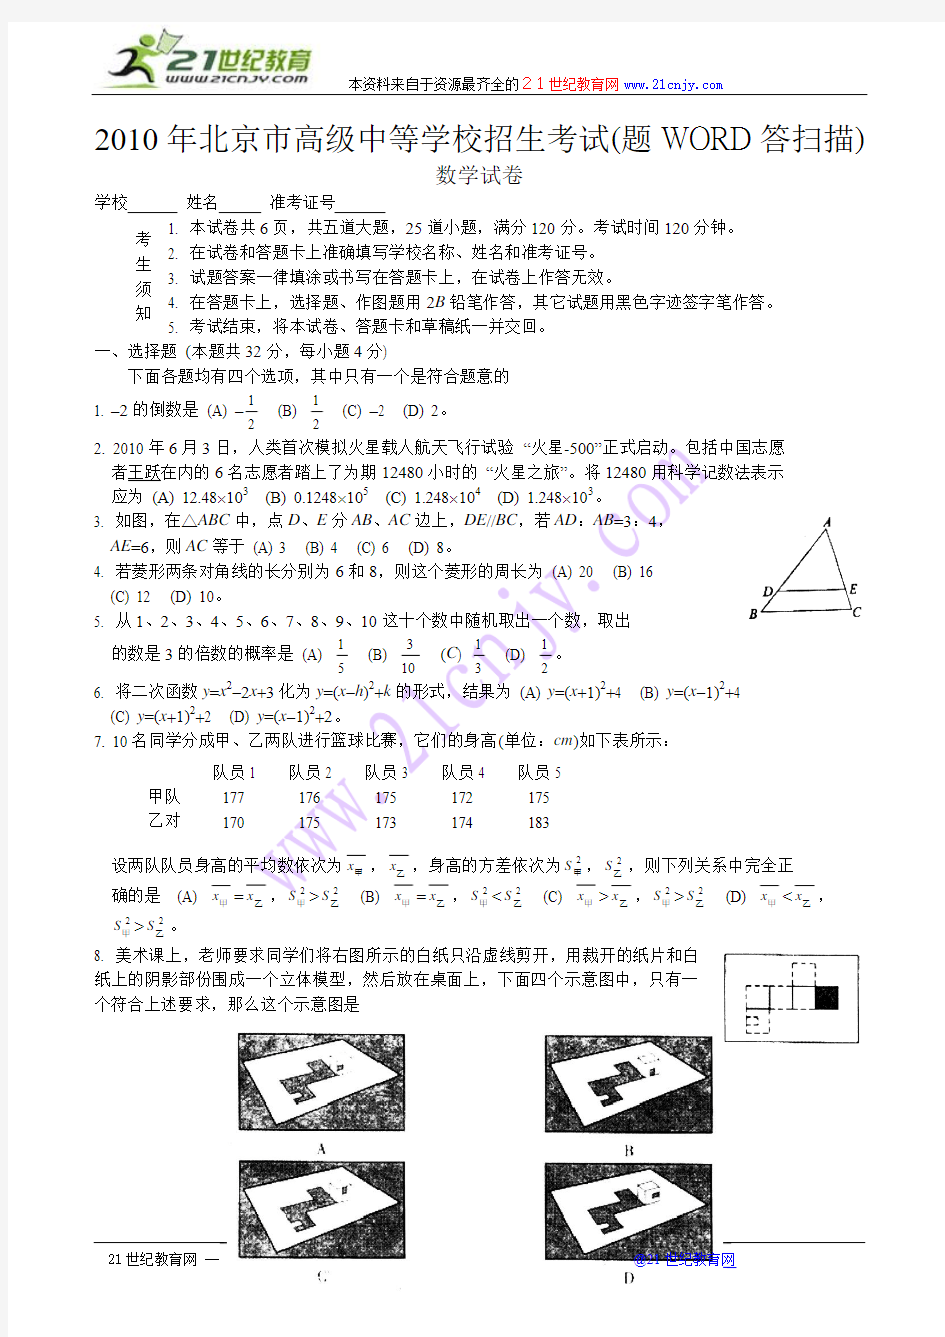 2010年北京市高级中等学校招生考试题(WORD版答案扫描)